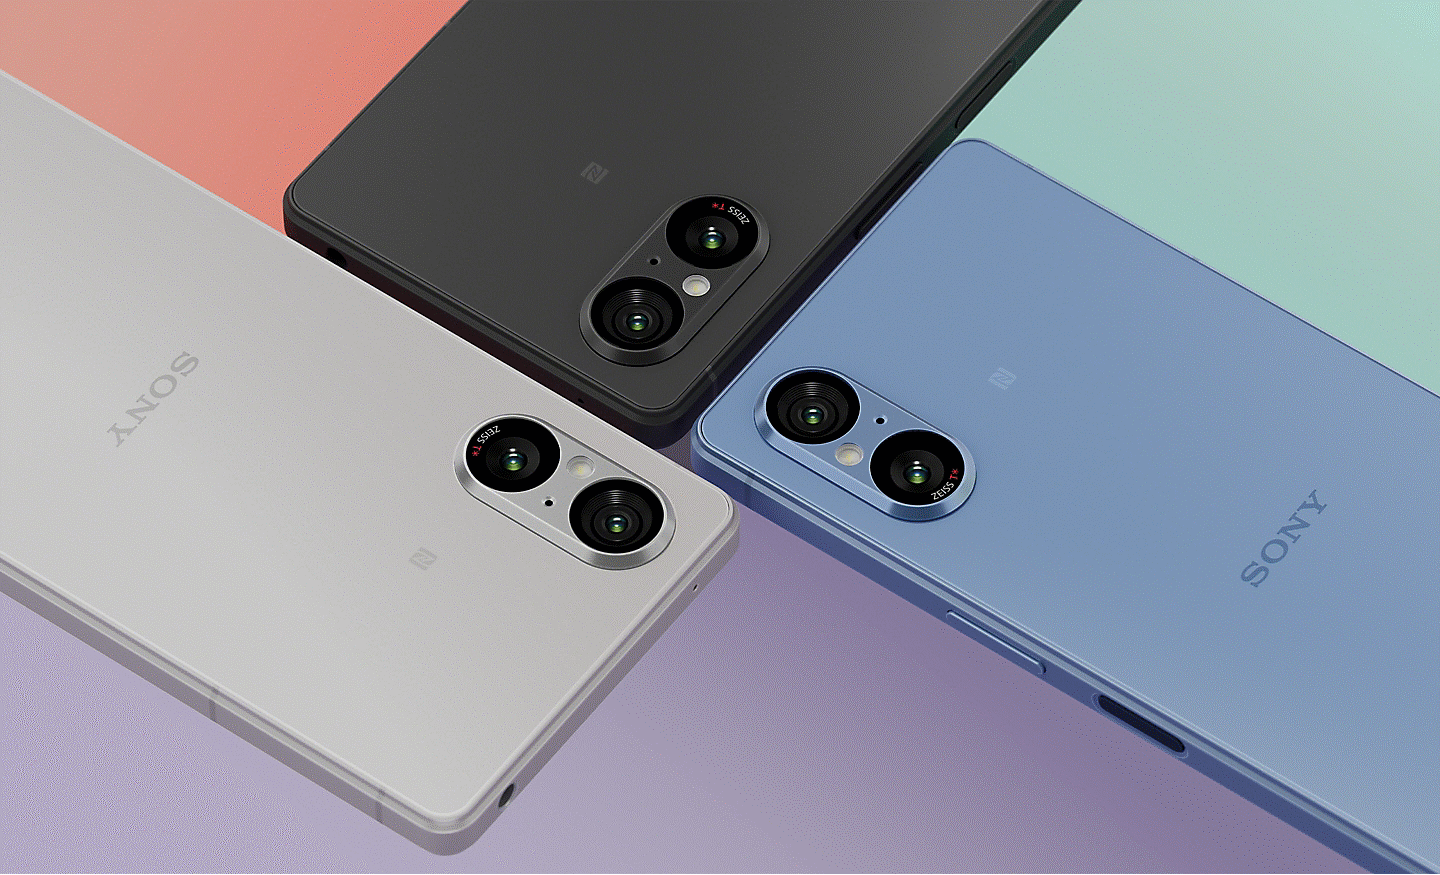 Obrázok troch smartfónov Xperia 5 V v čiernej, striebornej a modrej farbe, sú nasmerované tak, aby sa stretli v strede obrázka